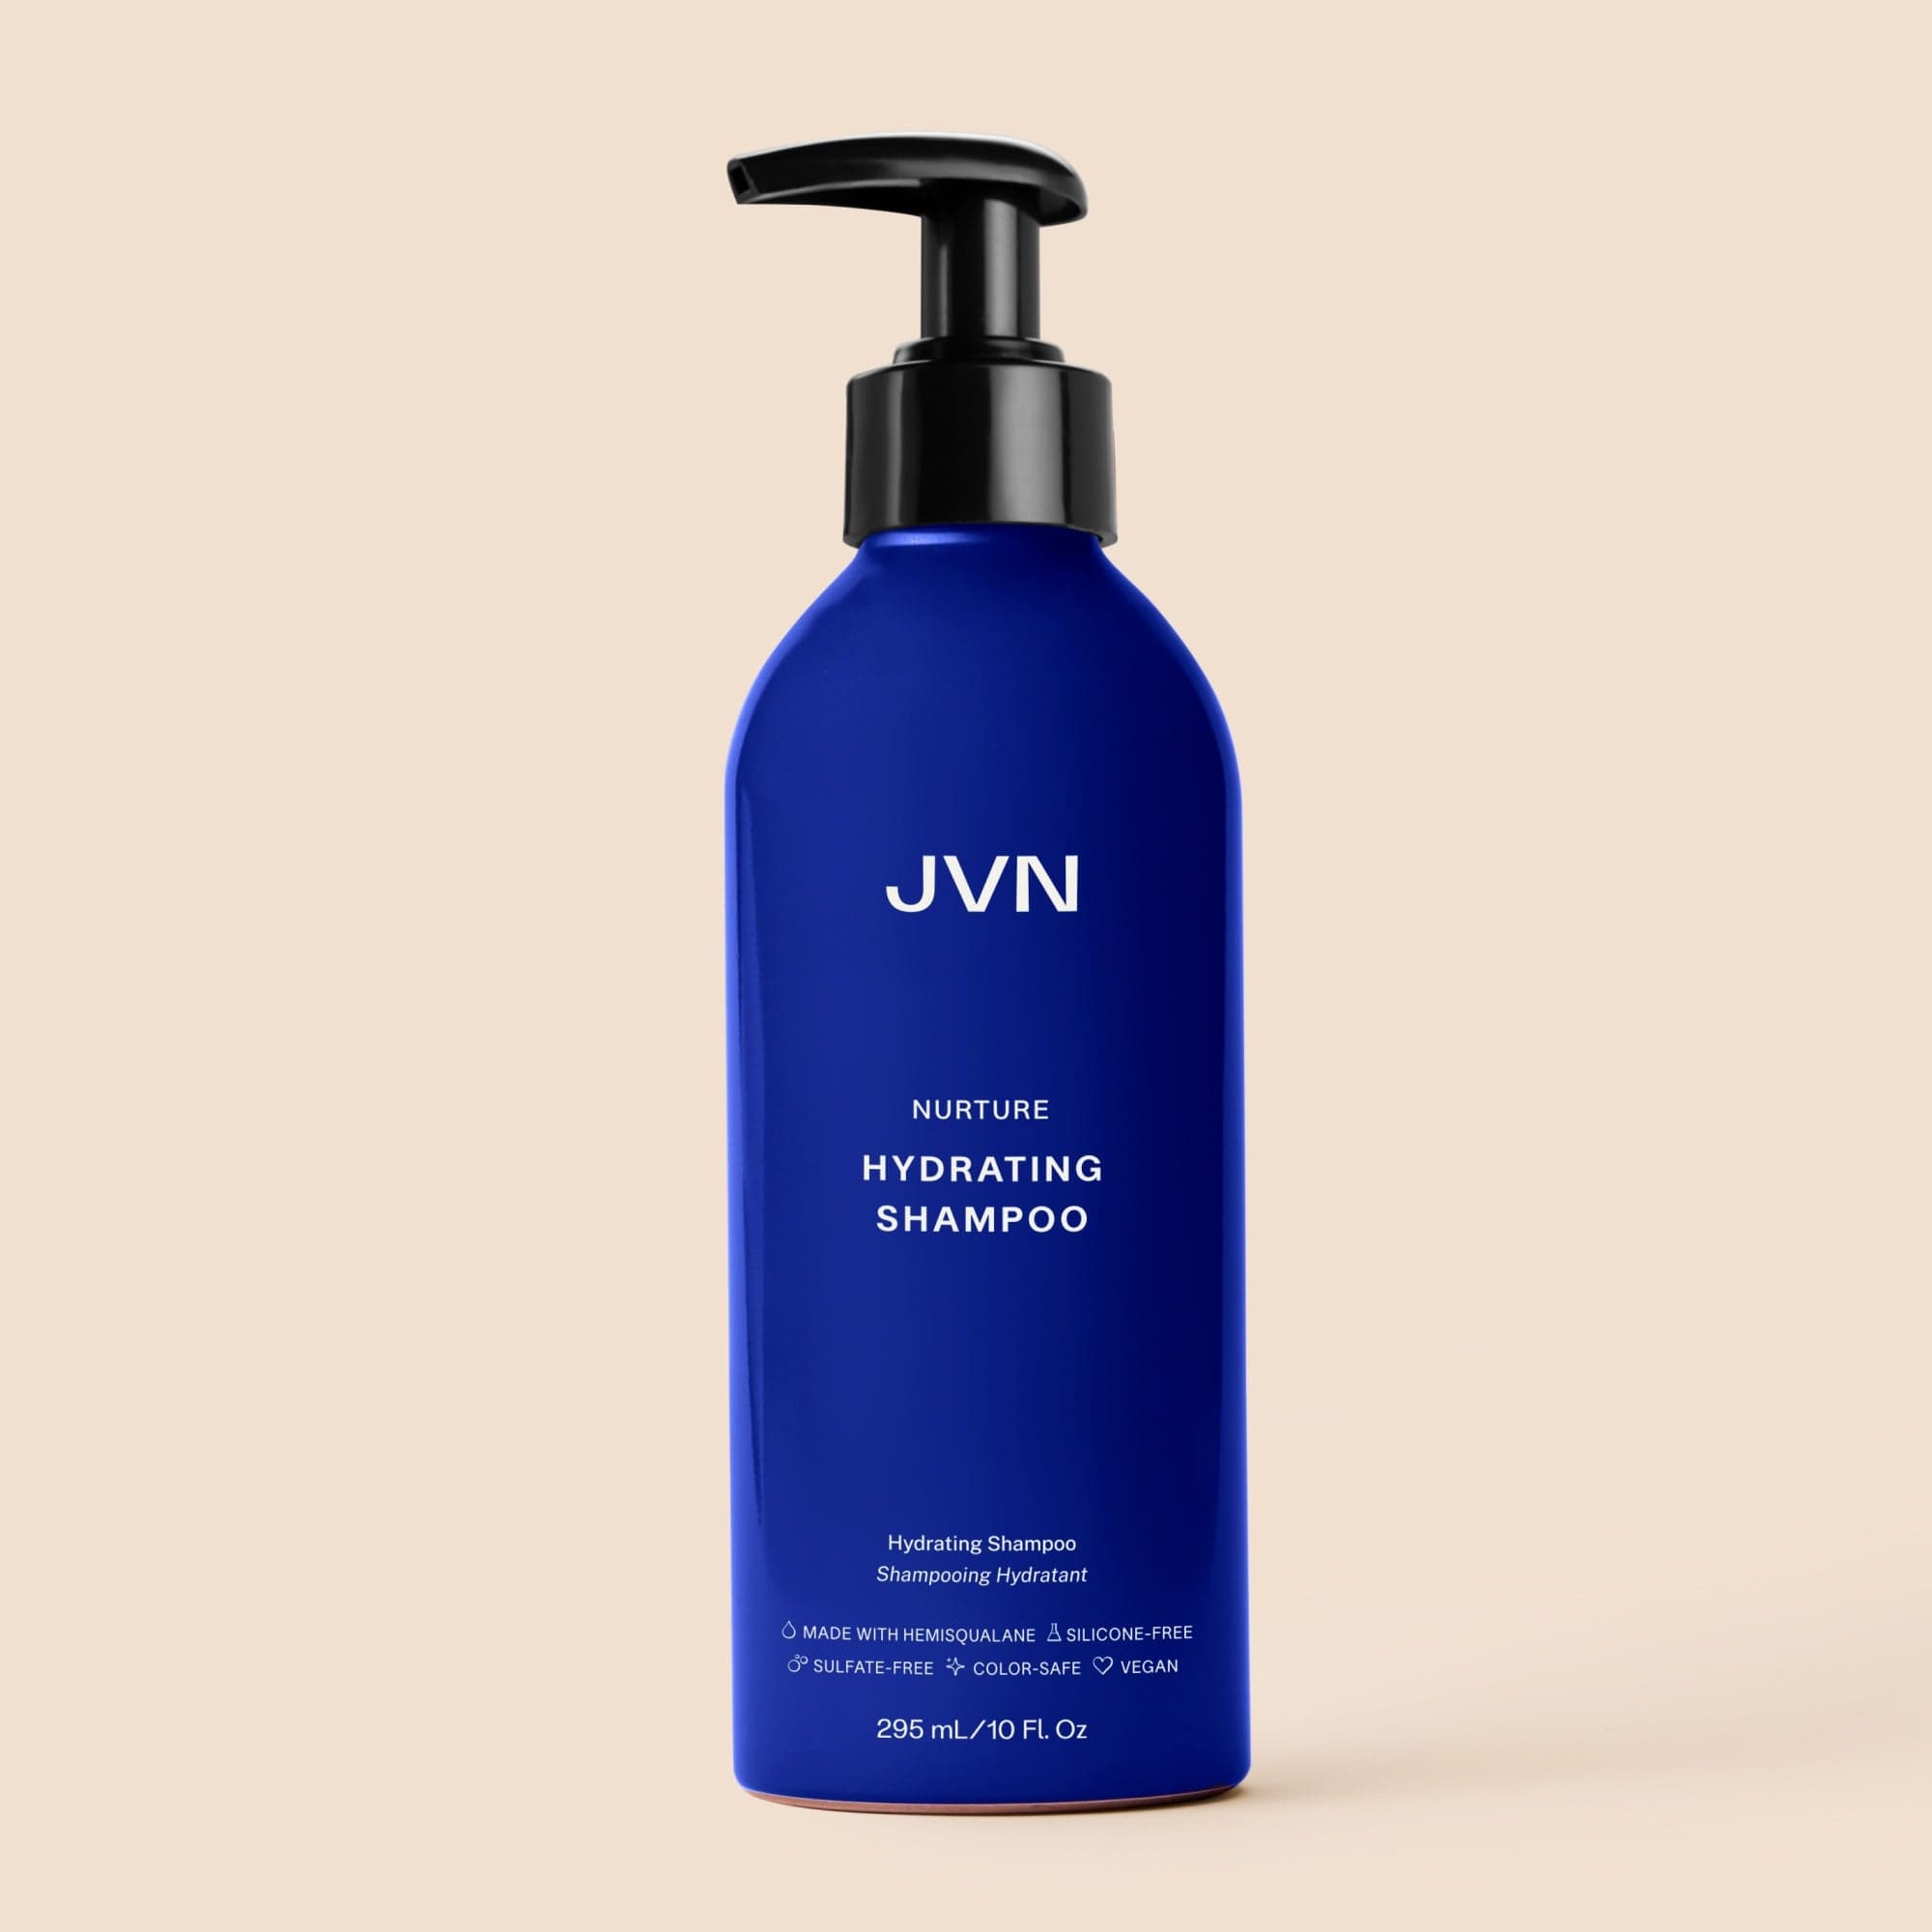 Nurture Hydrating Shampoo Moisturizing Shampoo | JVN – JVN Hair